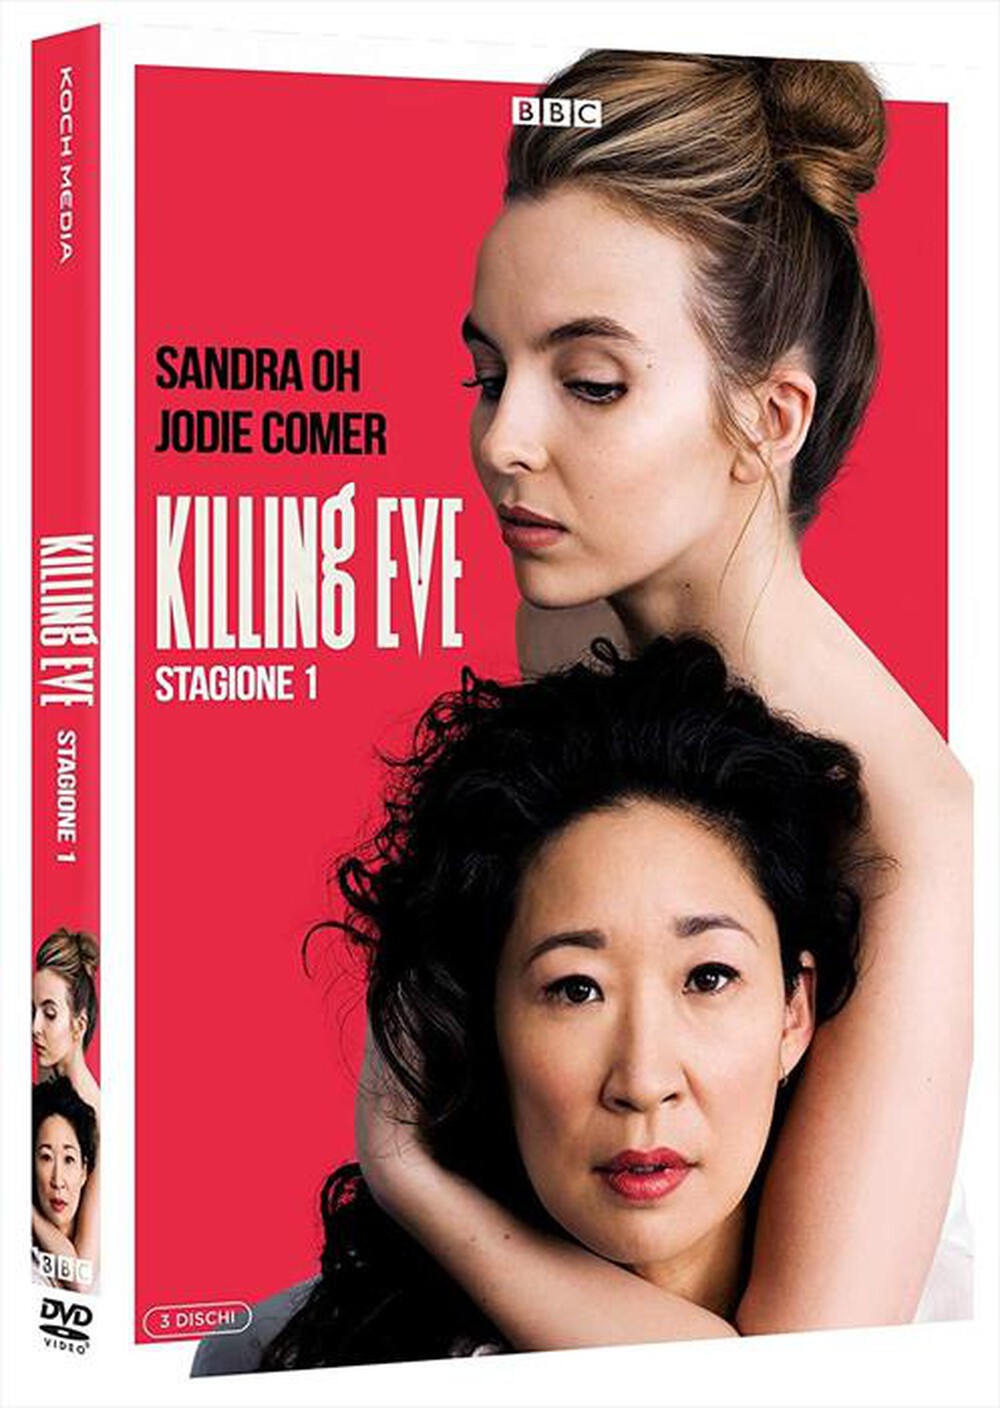 "KOCH MEDIA - Killing Eve - Stagione 01 (4 Dvd)"